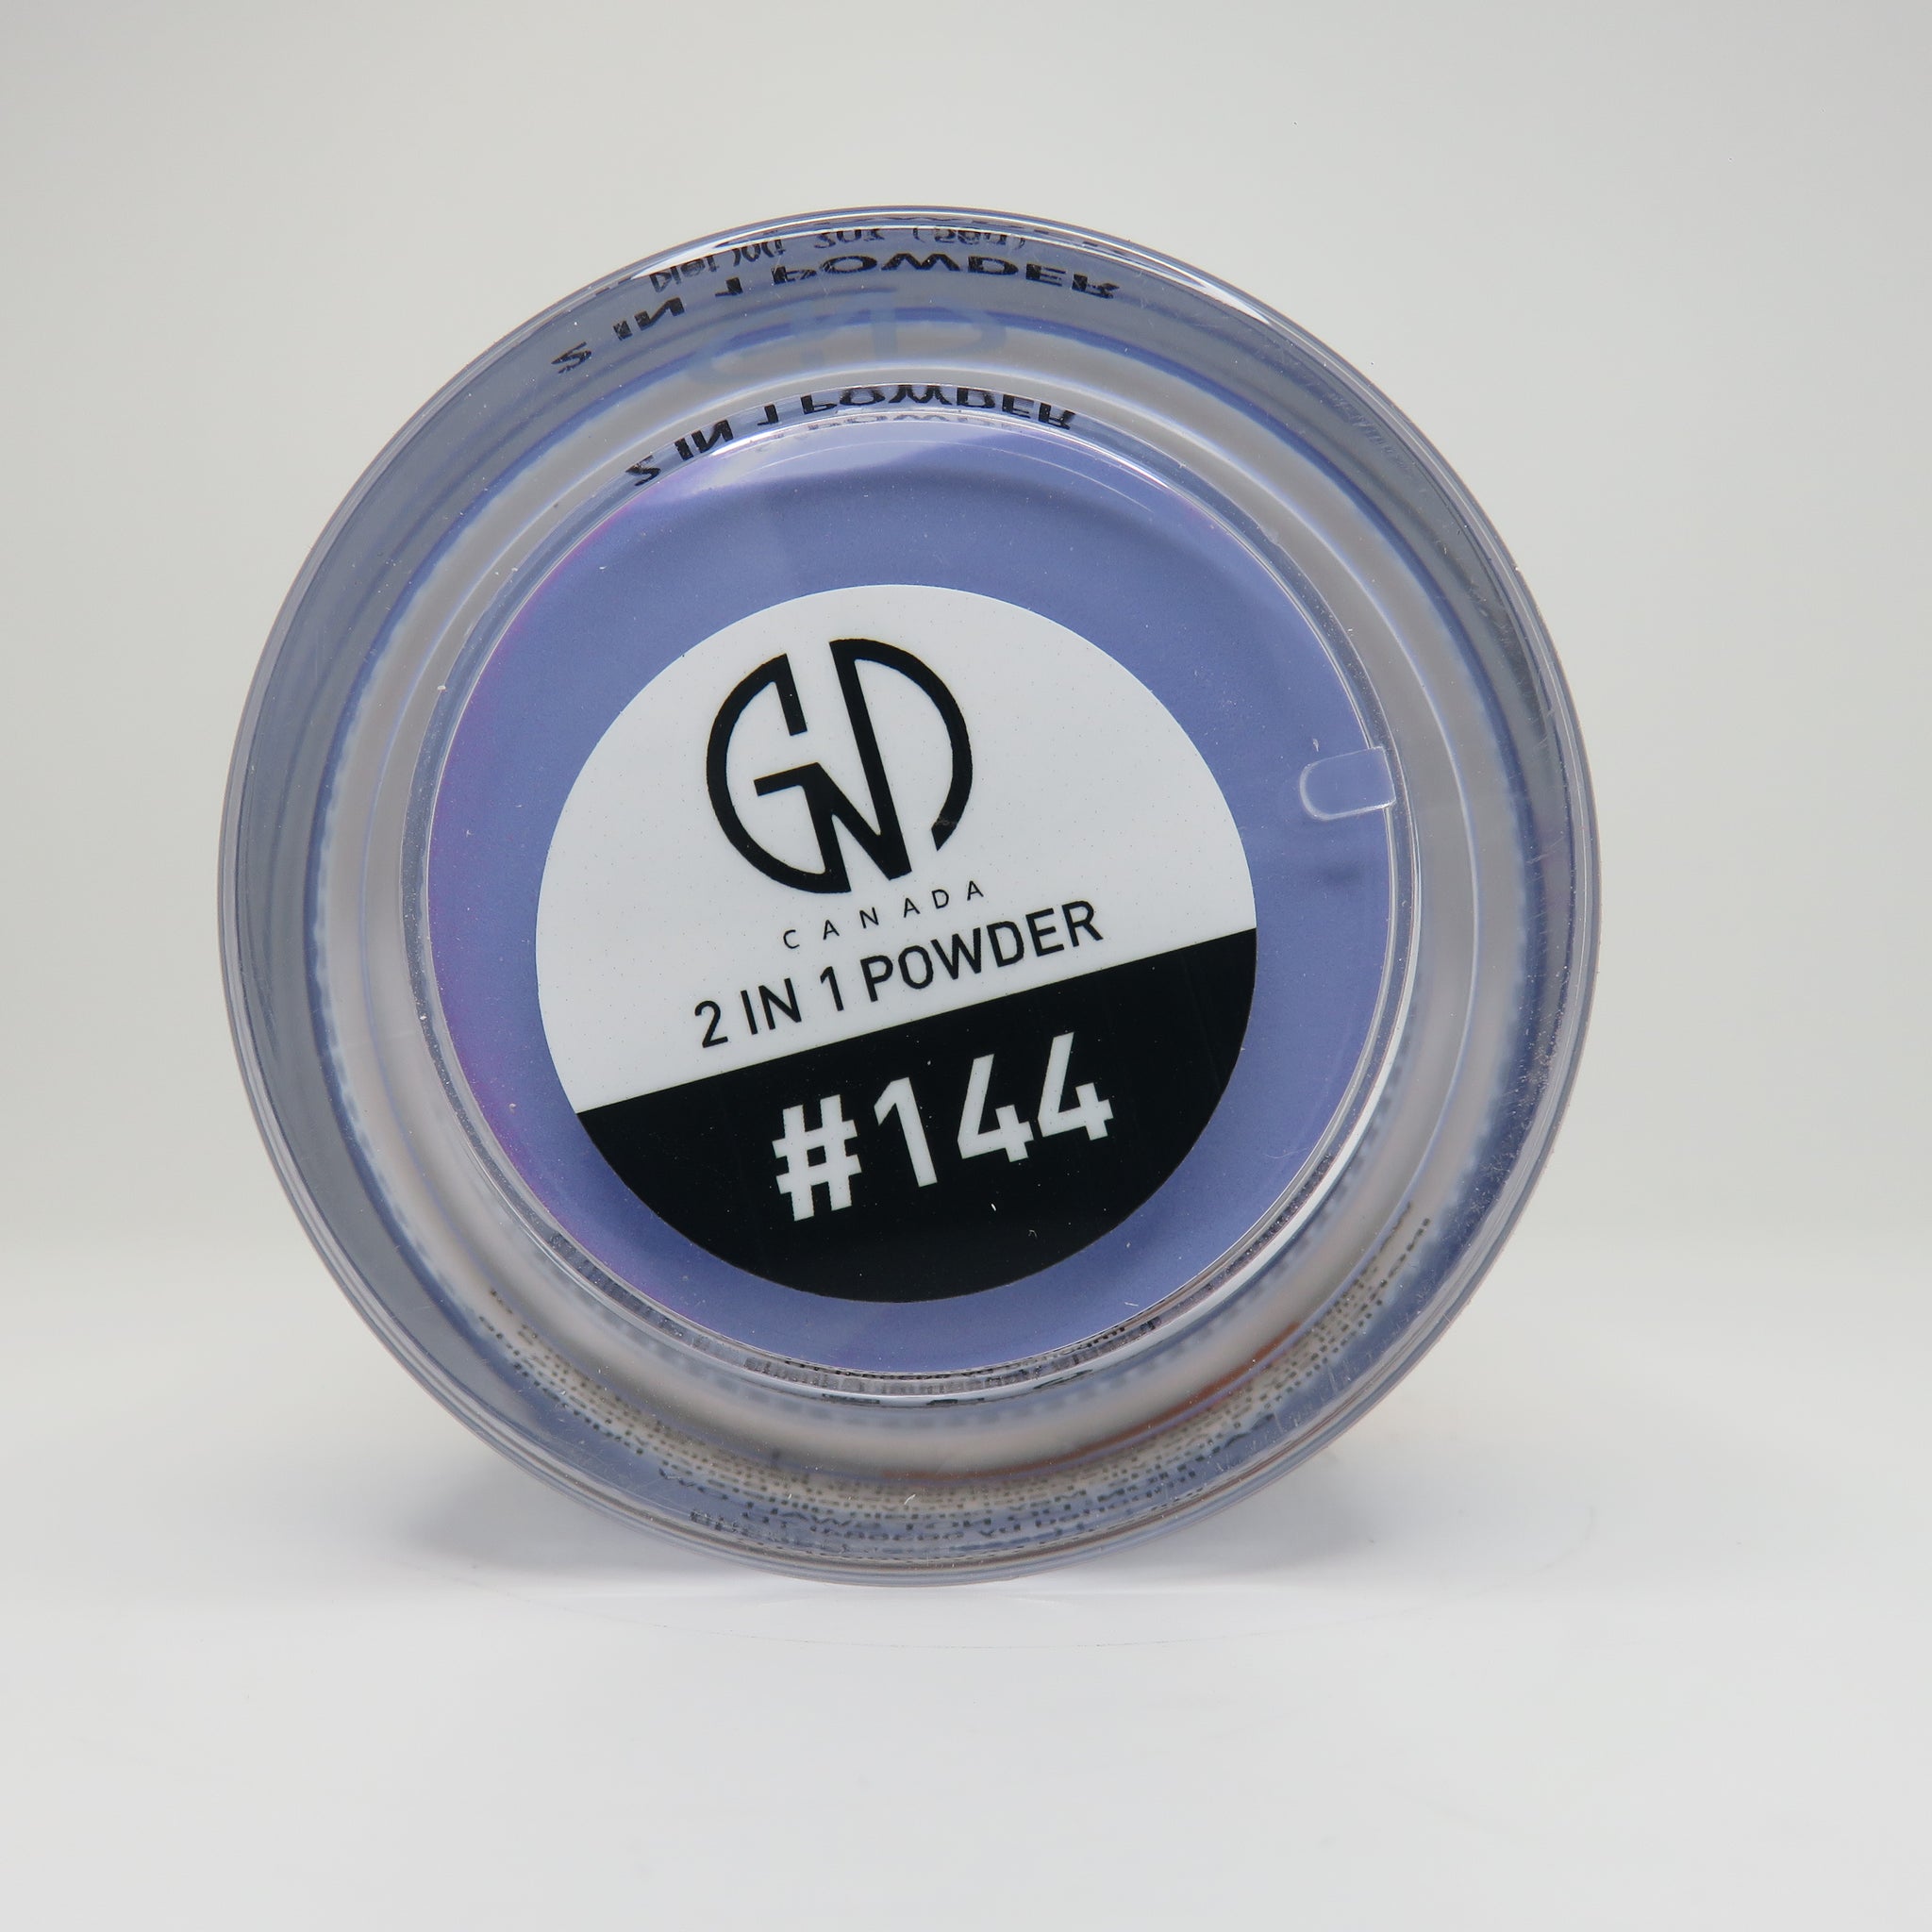 Acrylic & Dip Powder 2-in-1 GND Canada® #144 | 2 Oz